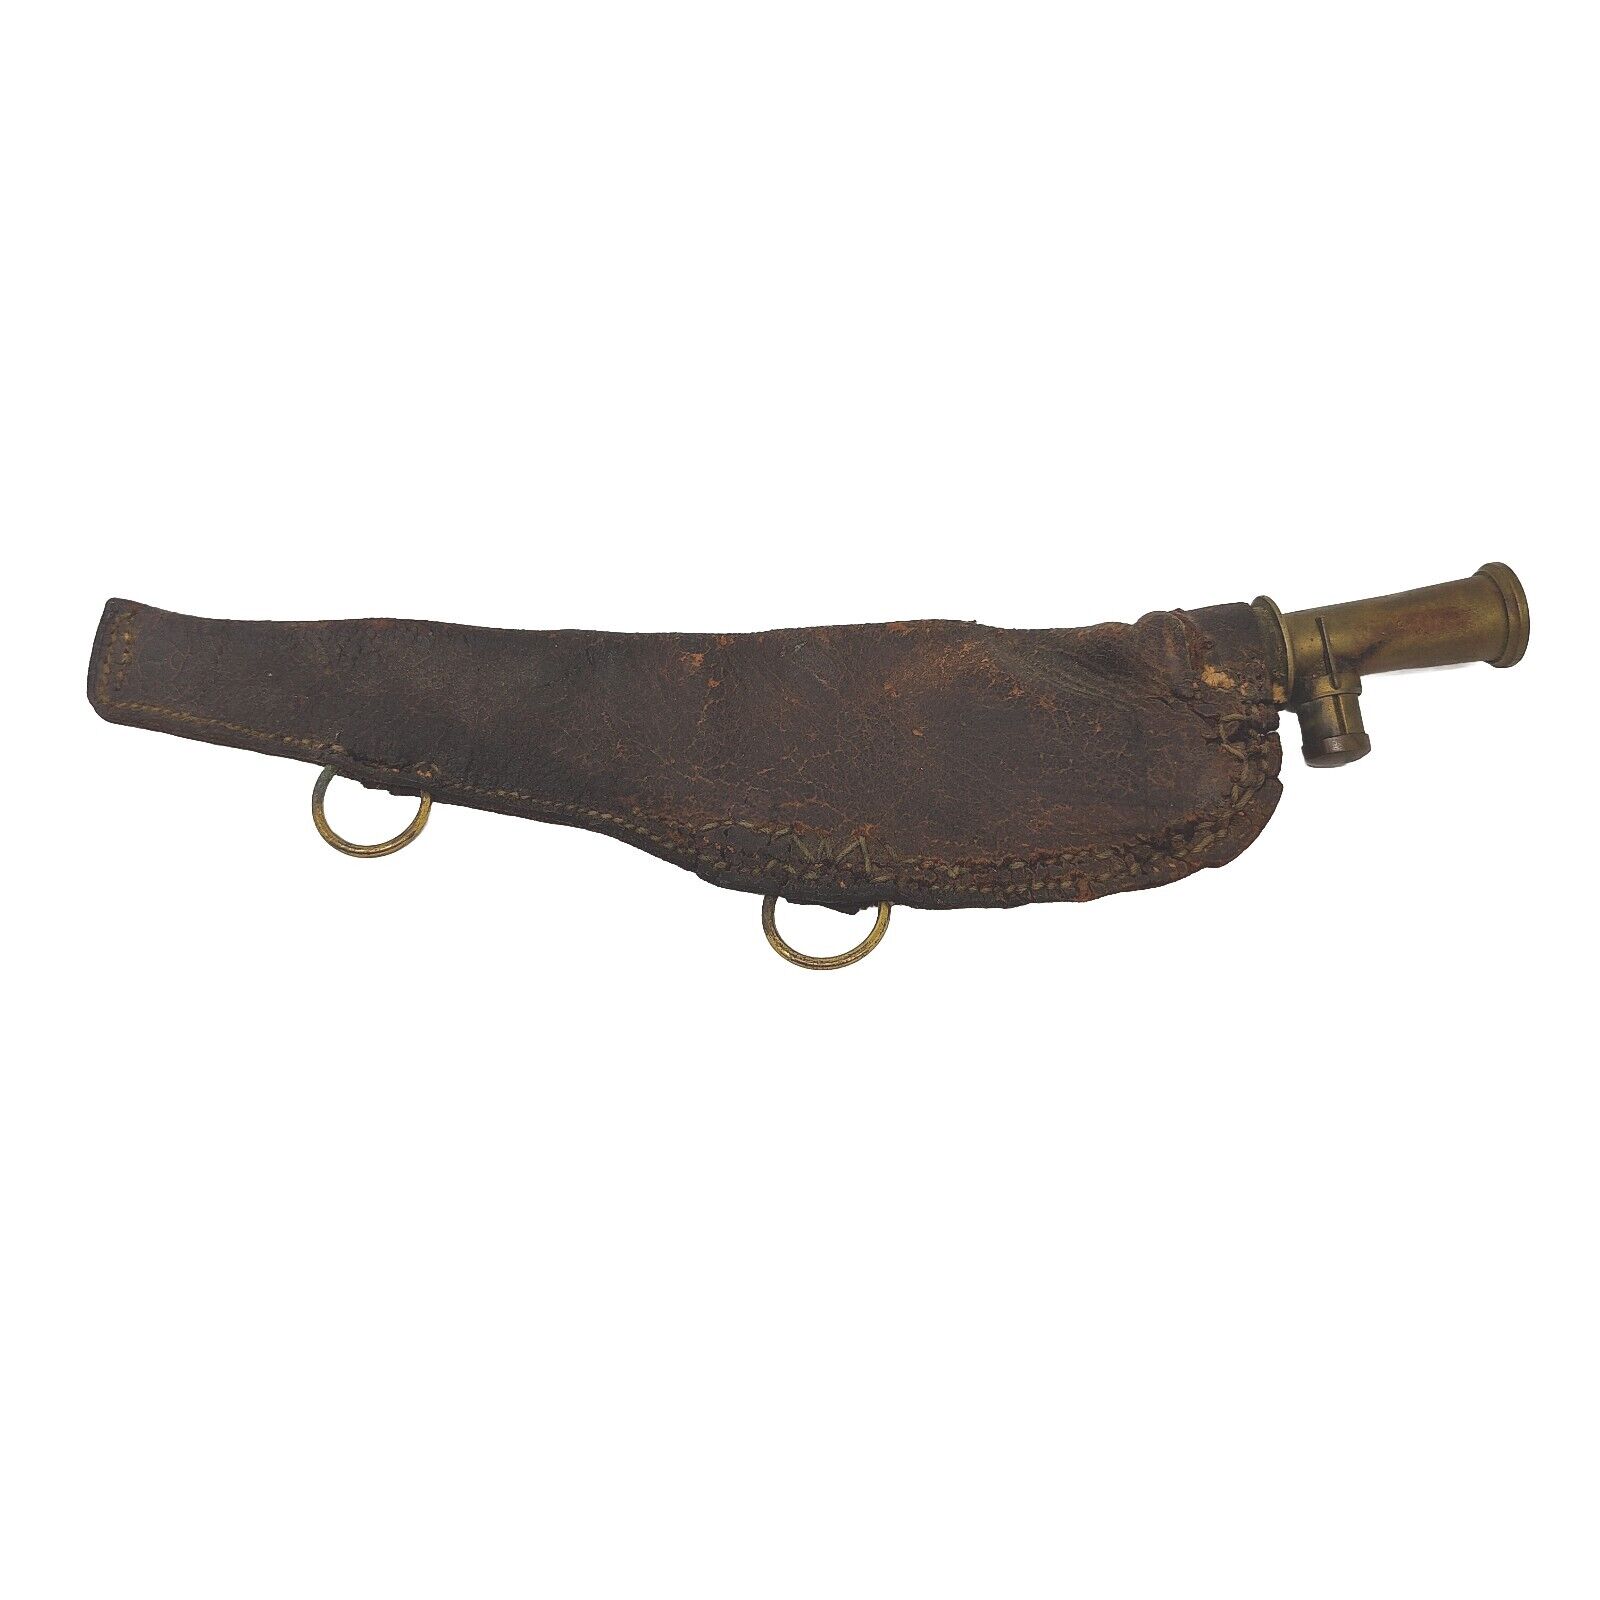 Antique G & J.W. Hawksley Leather & Brass Sheffield Gunpowder Pouch Civil War